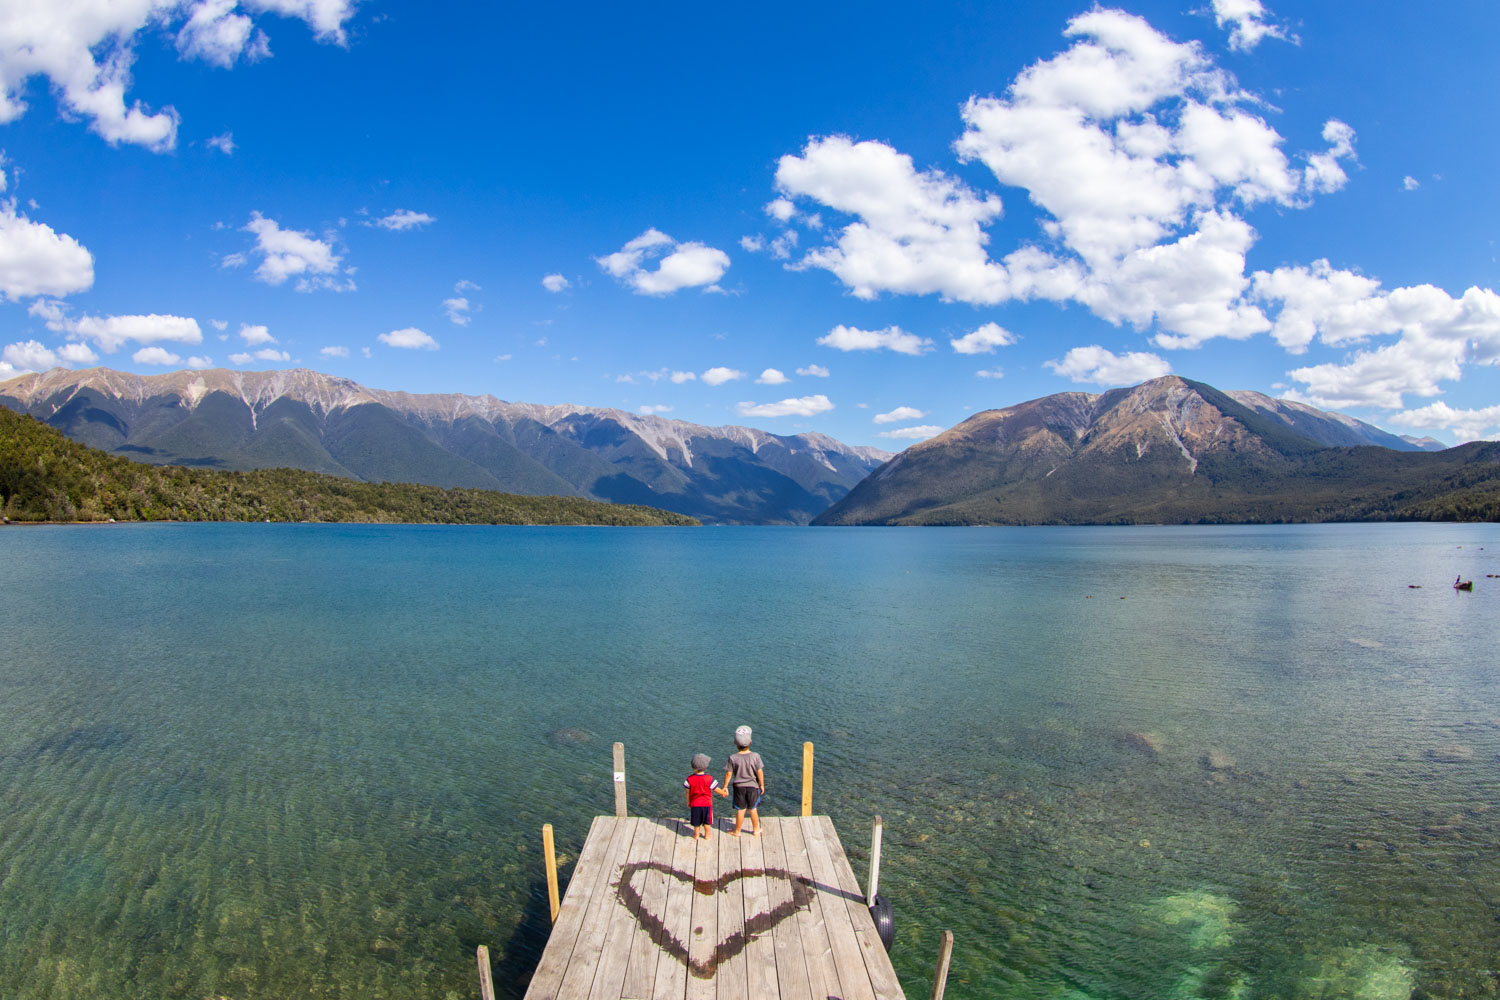 Debout sur un quai en bois, deux enfants se tiennent la main au bord d’un lac et regardent les montagnes au loin.